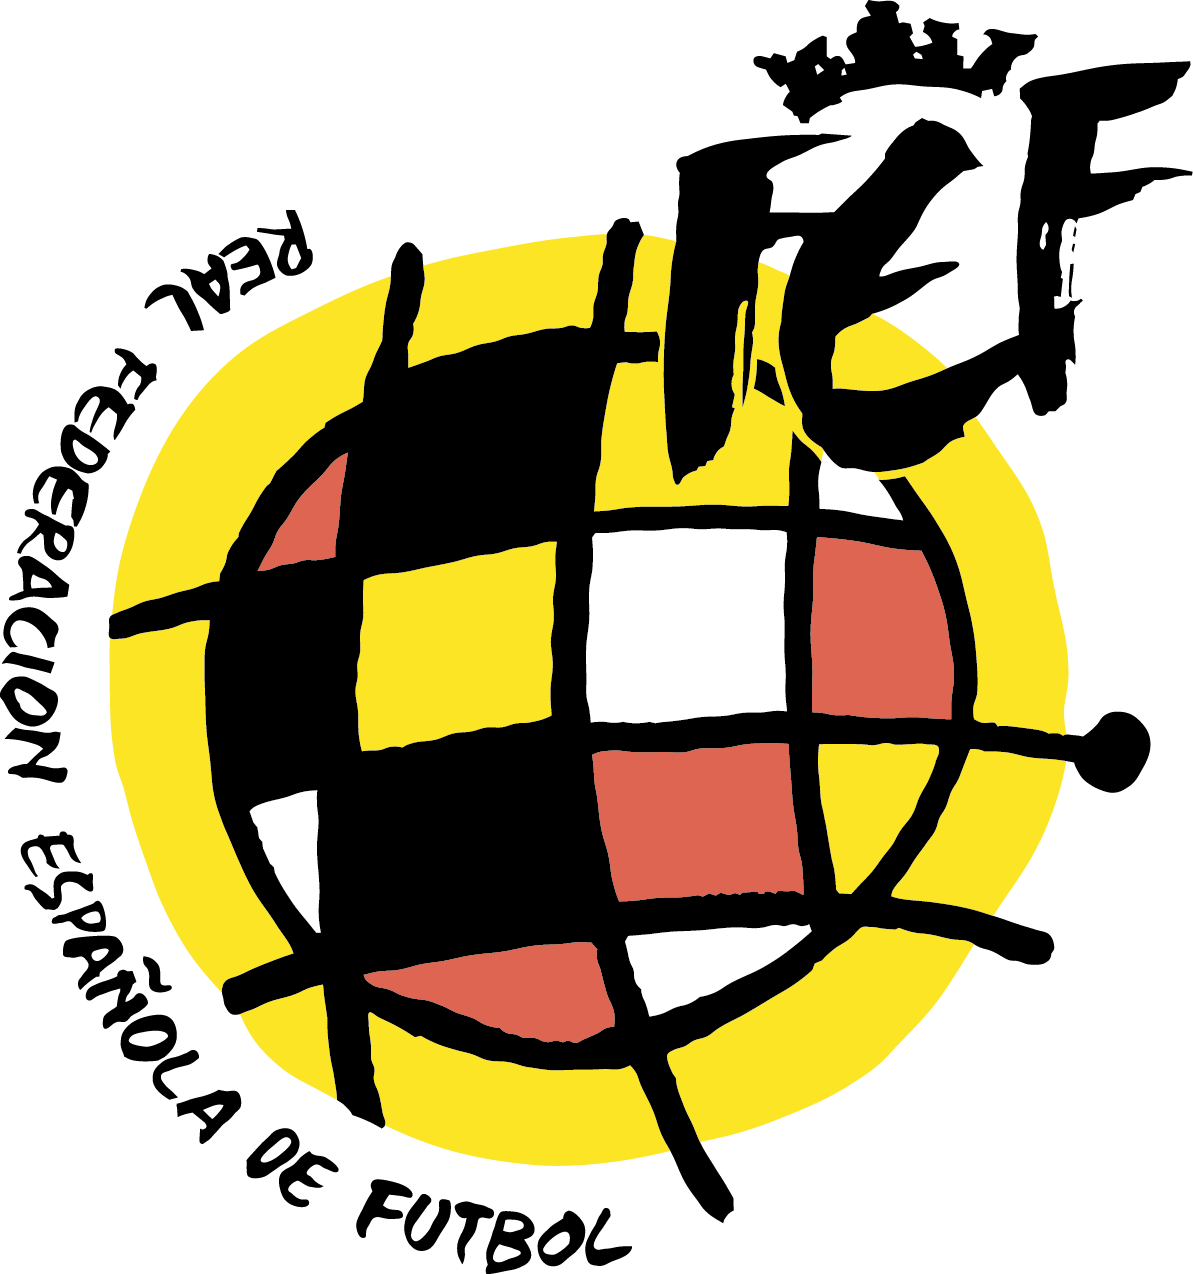 Federacion Española de Futbol Logo [Royal Spanish Football Federation - rfef.es]